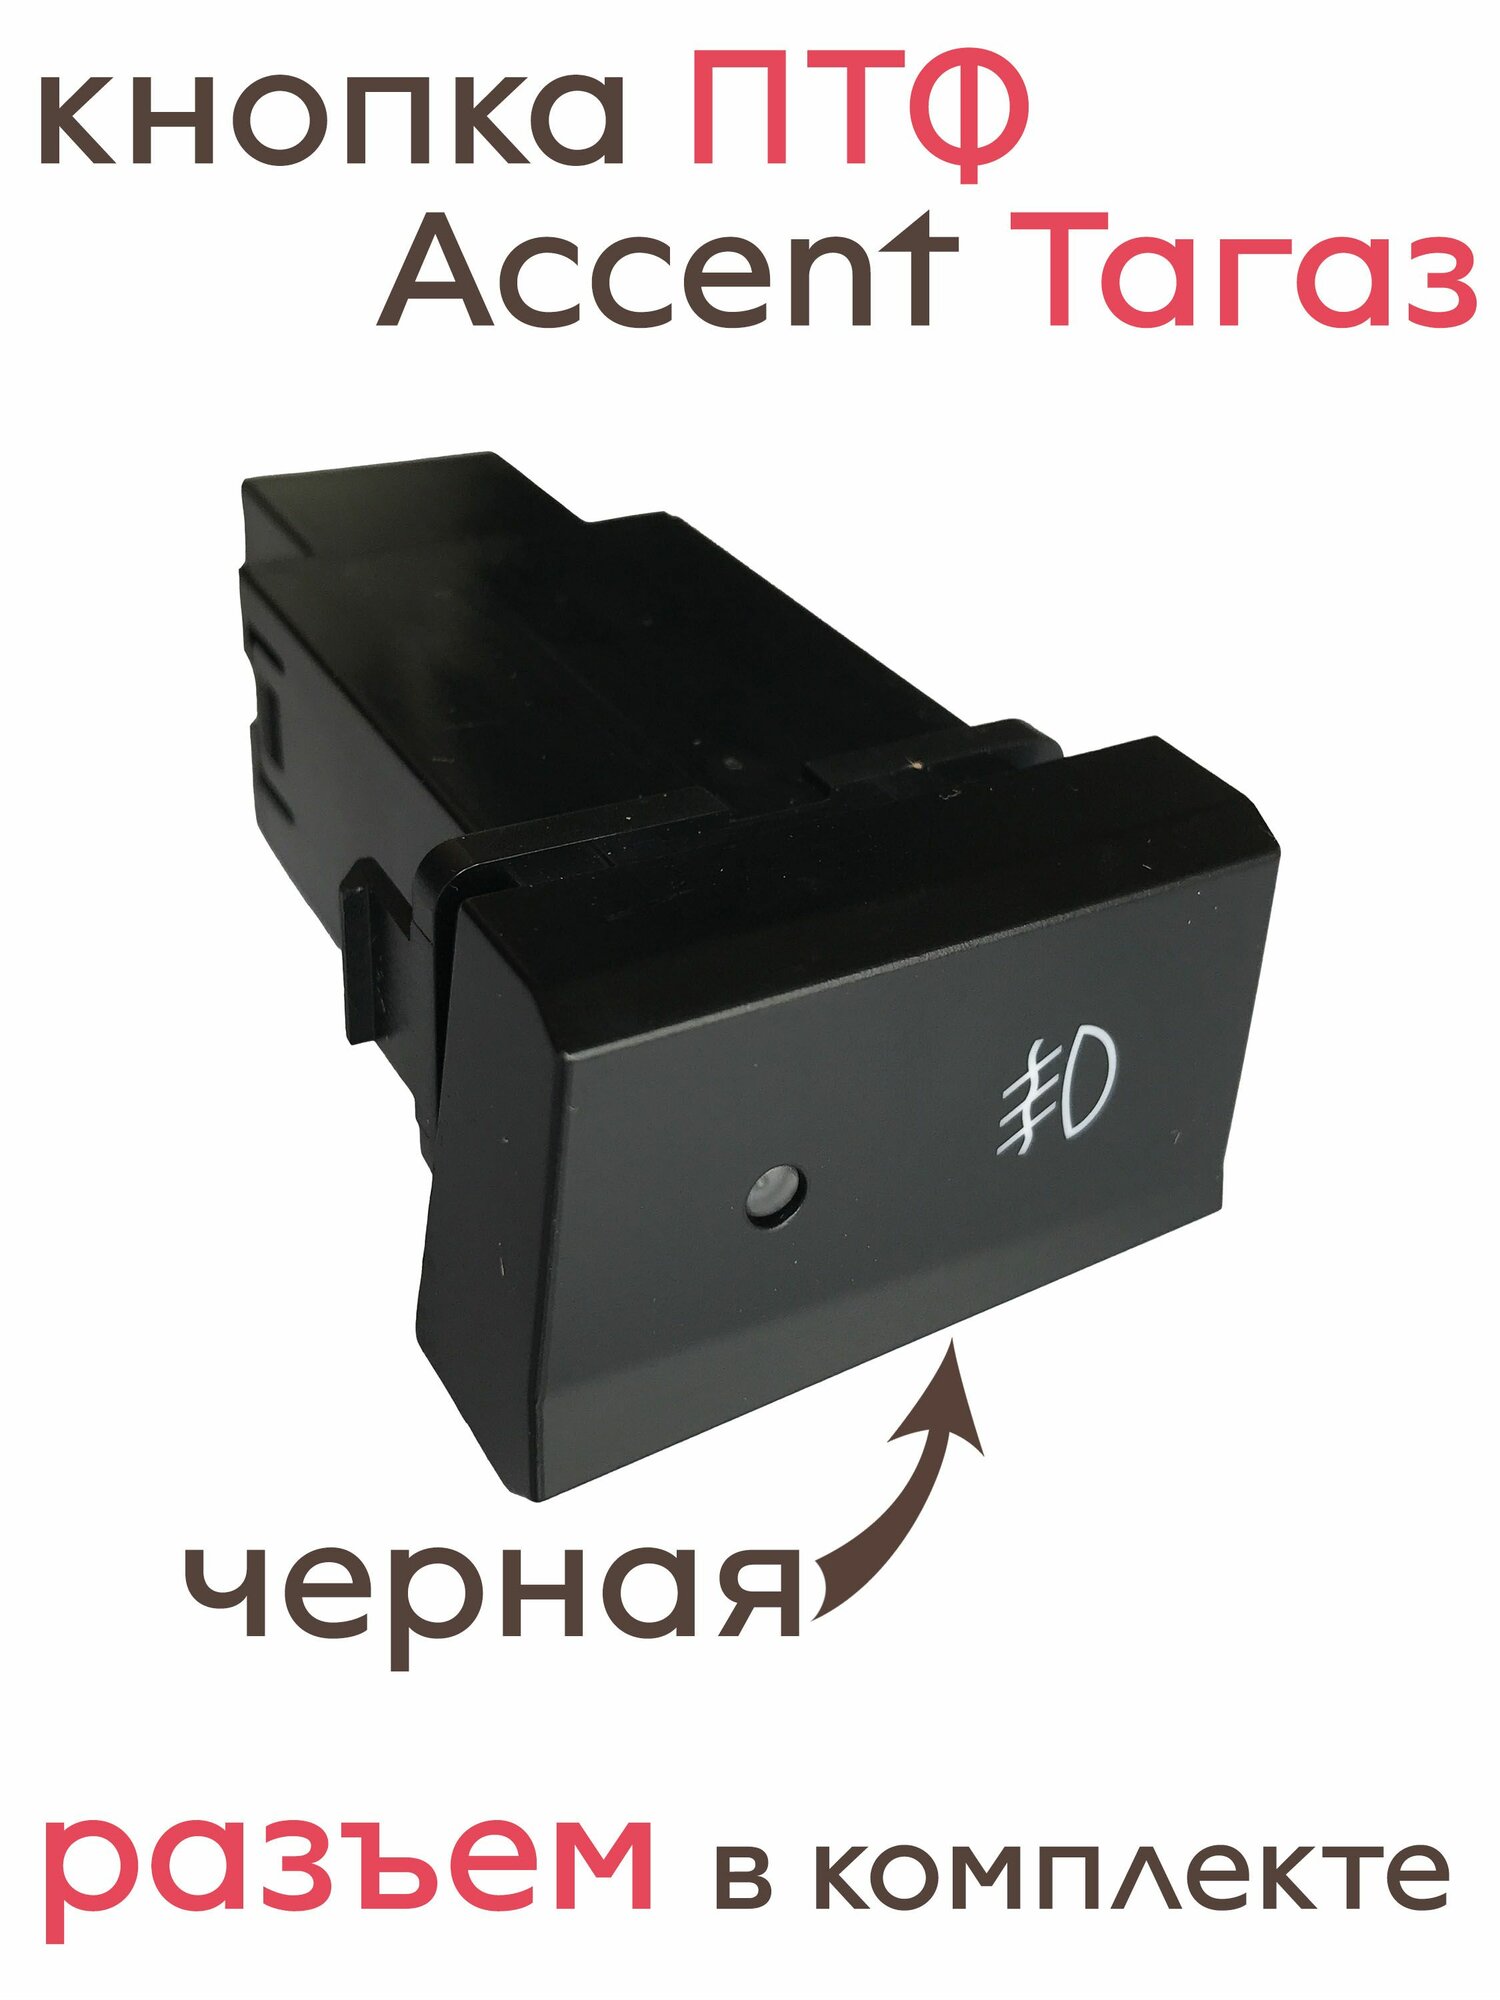 Неоригинальная черная кнопка включения передних противотуманных фар Хендай Акцент Тагаз (Accent Tagaz).